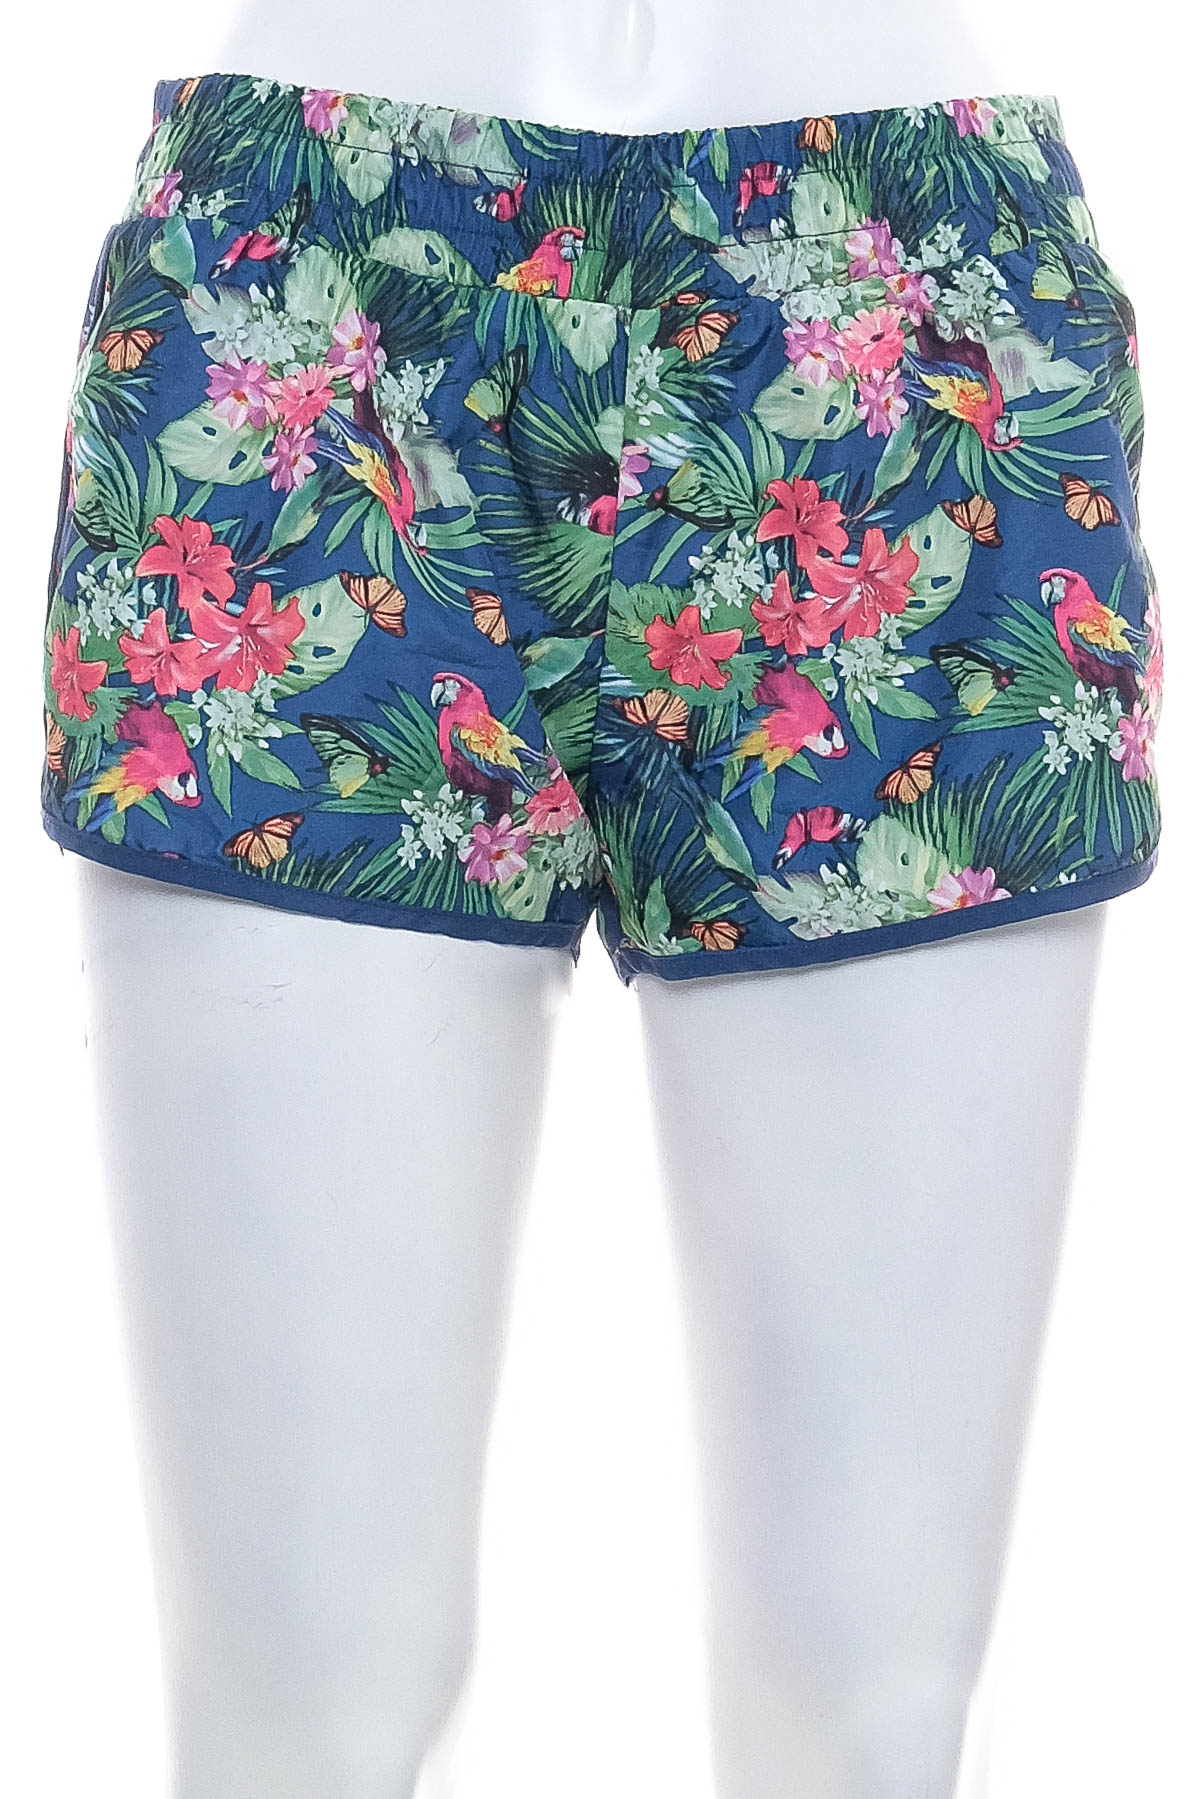 Women's shorts - Calzedonia - 0